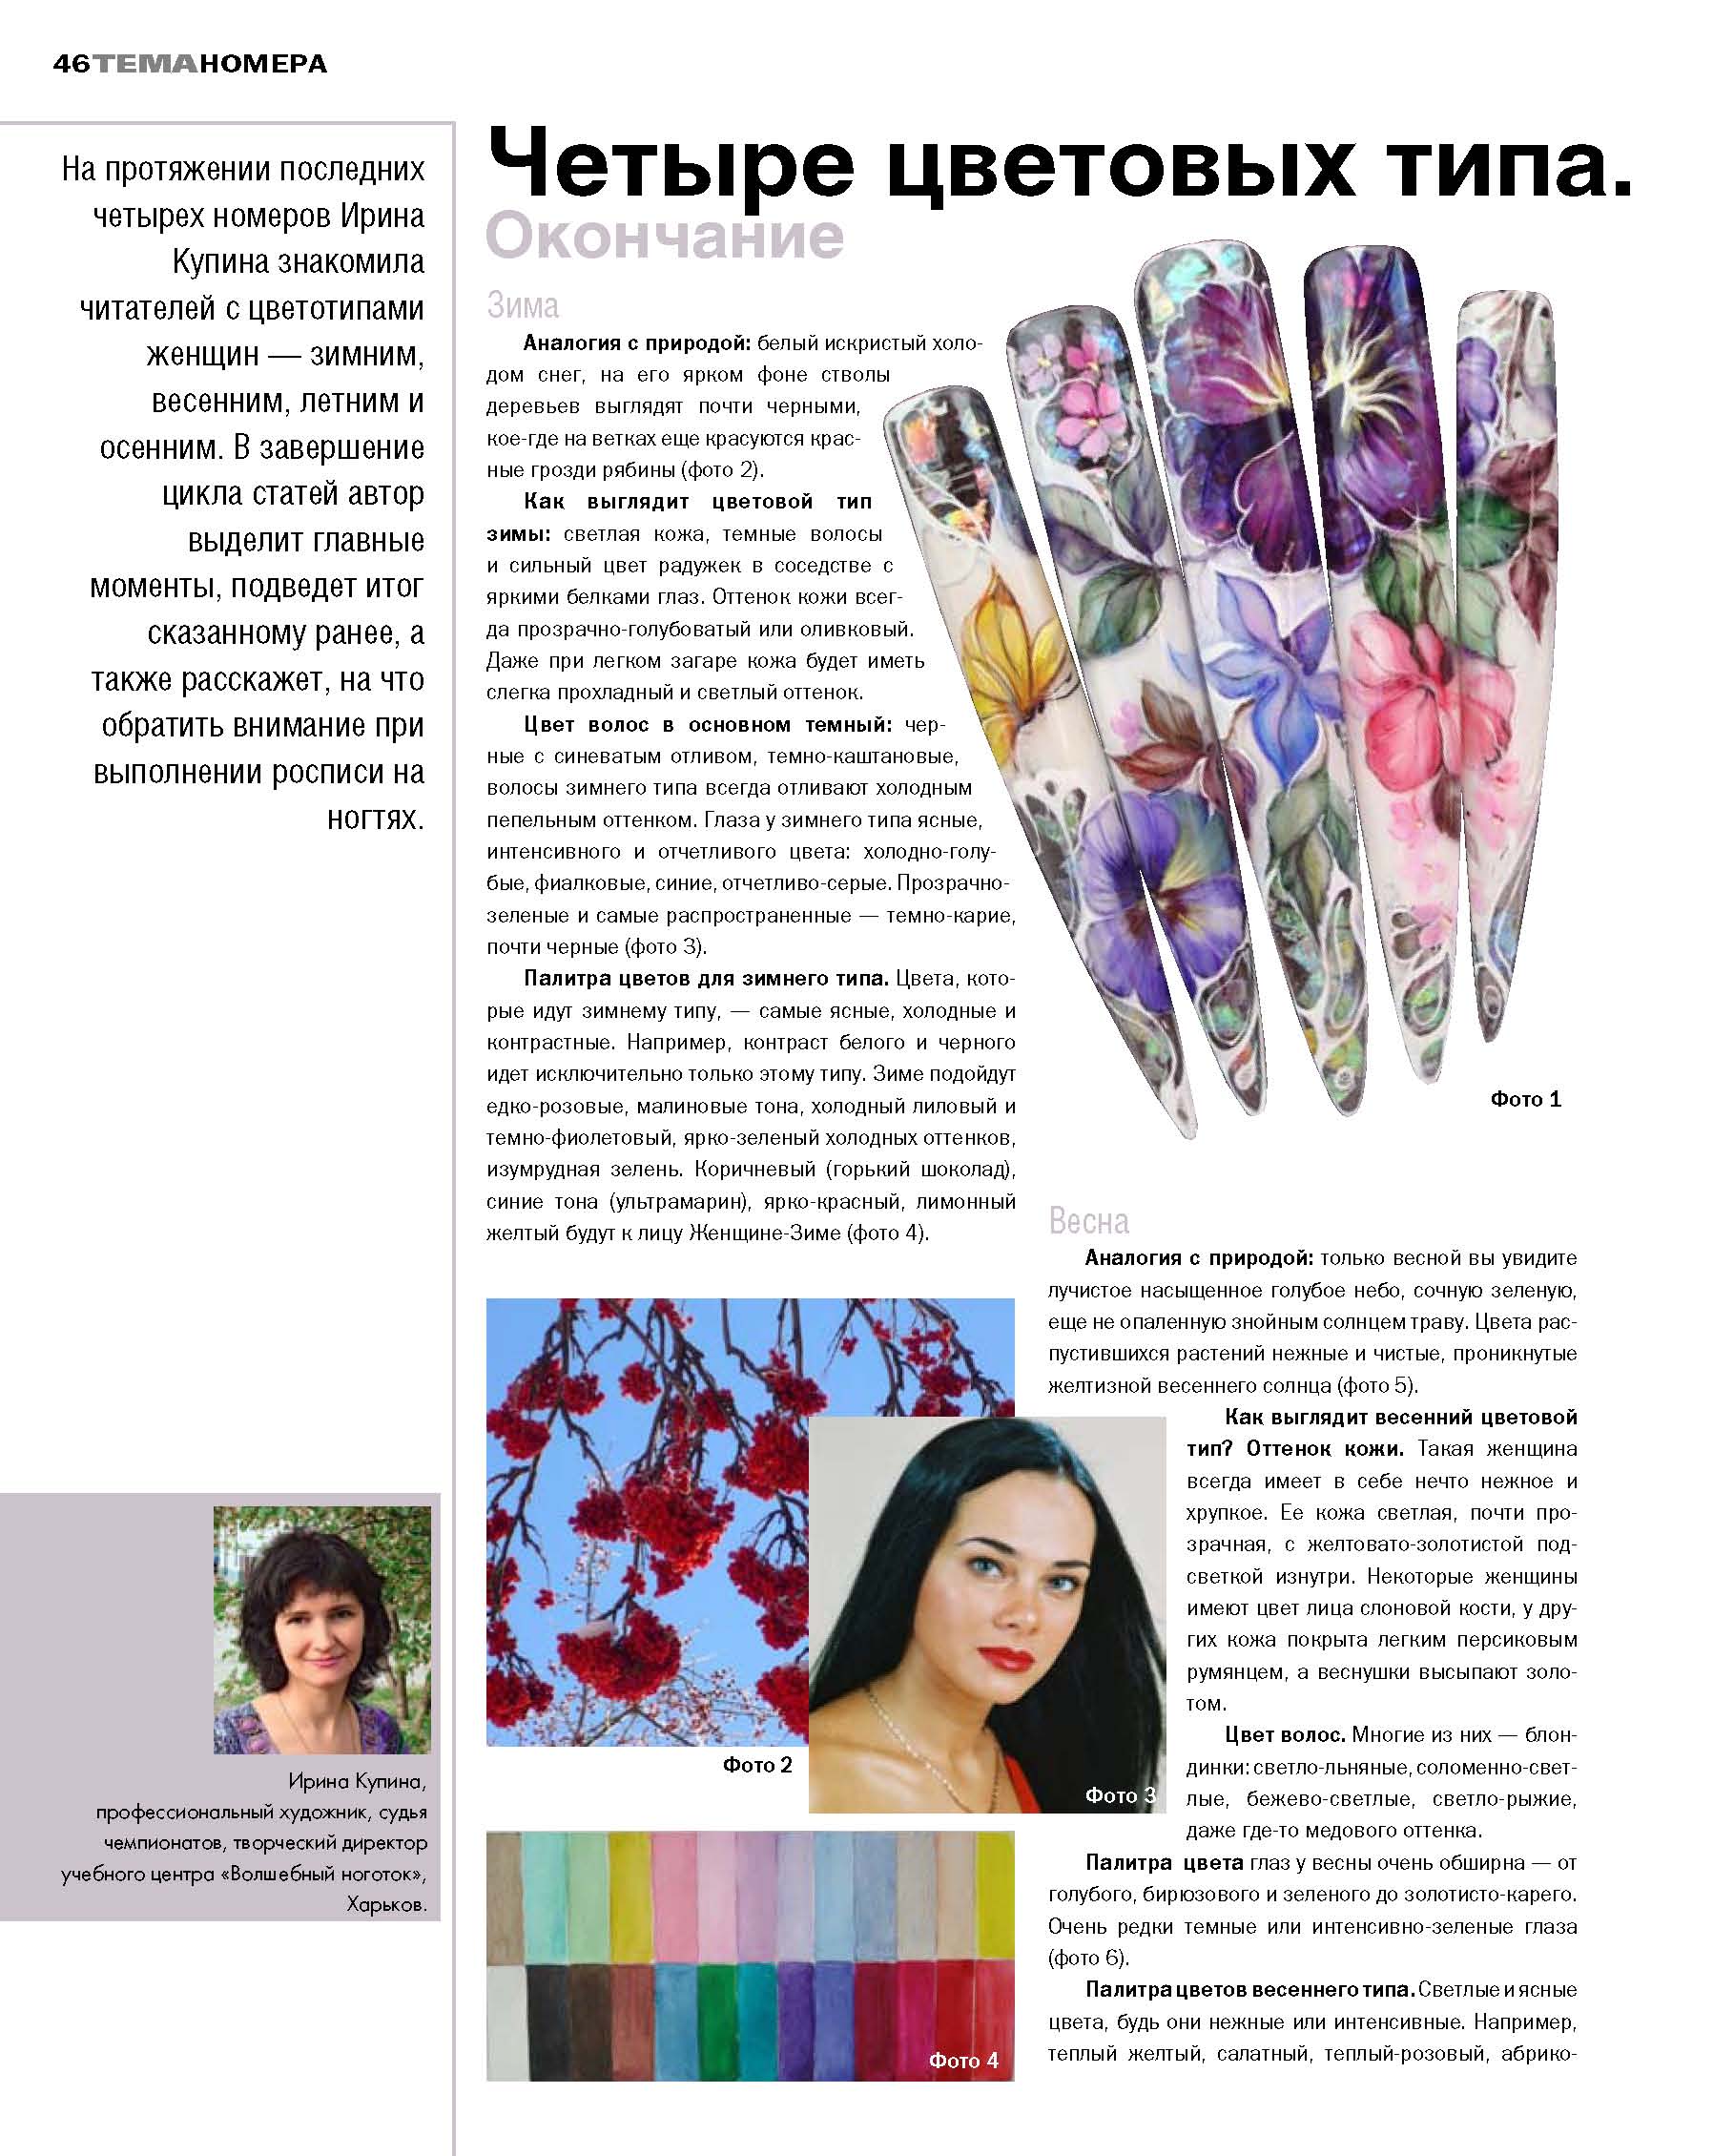 Серия из четырёх публикаций 
Четыре цветовых типа женщины
в журнале Nail ПРАКТИКА - ЗИМА